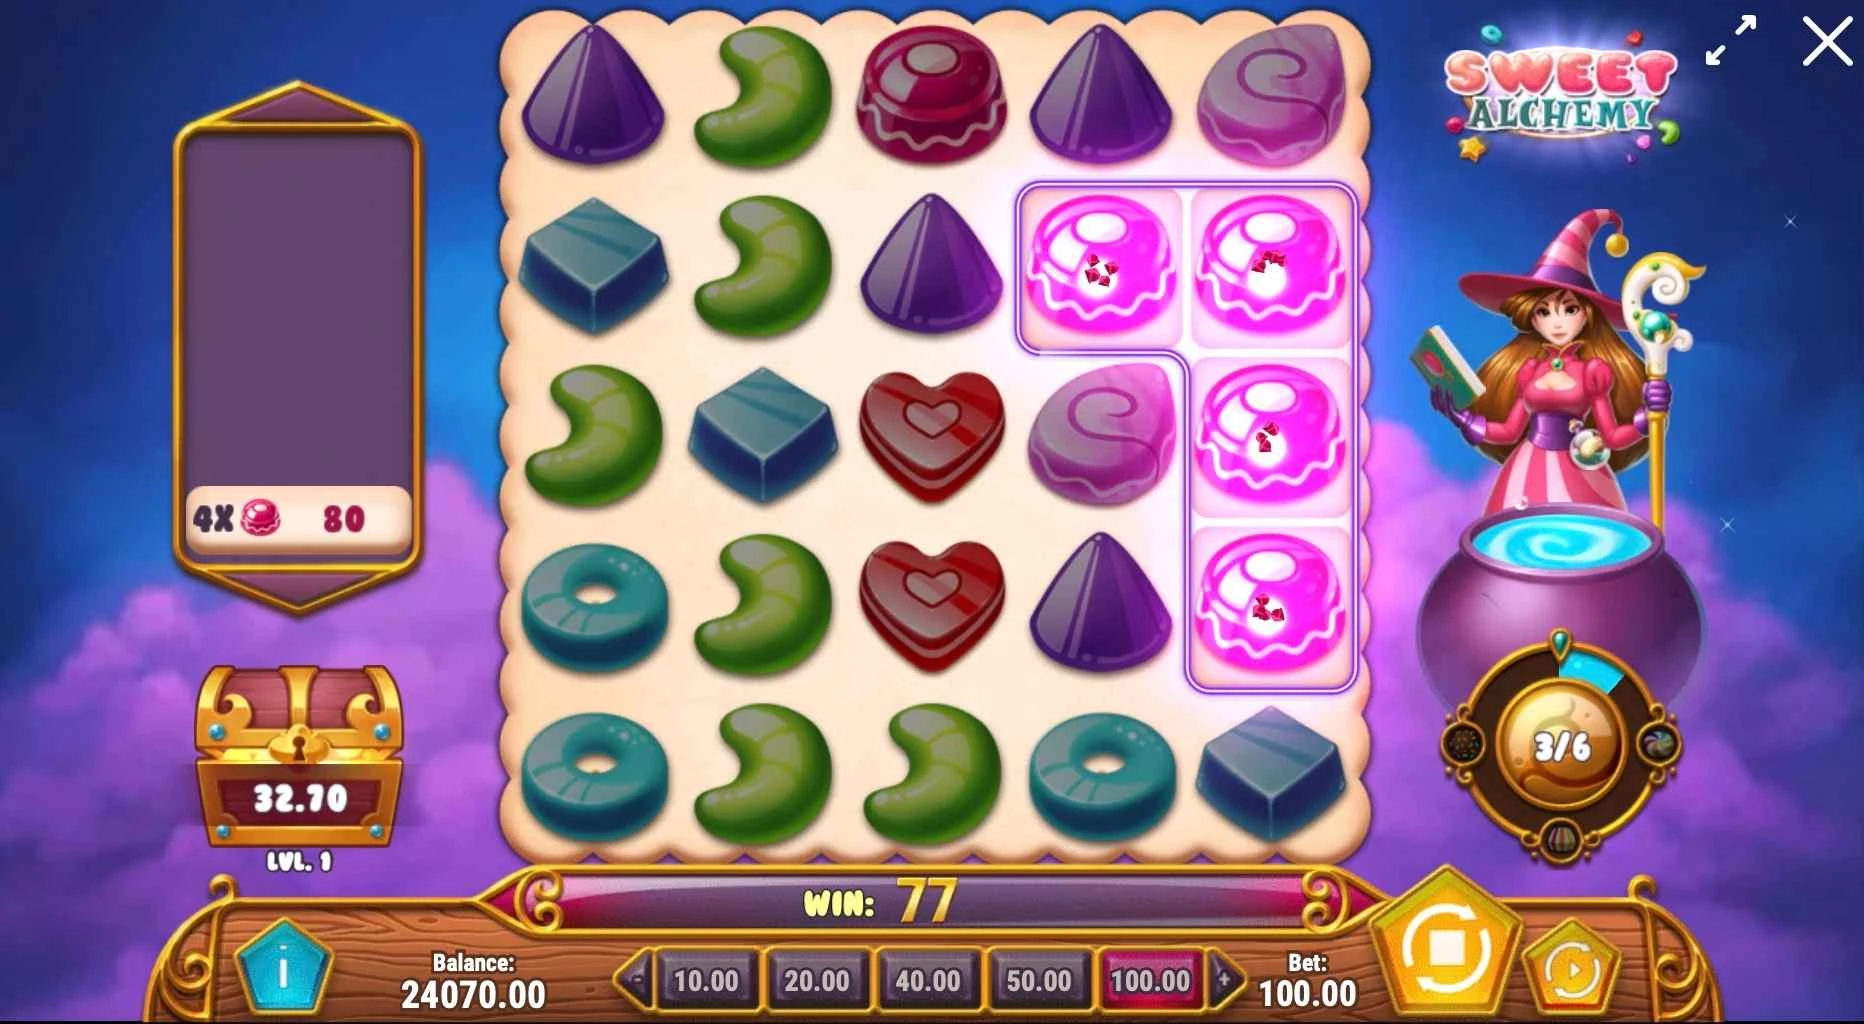 Sweet Alchemy Slot by Play'n Go - Wild